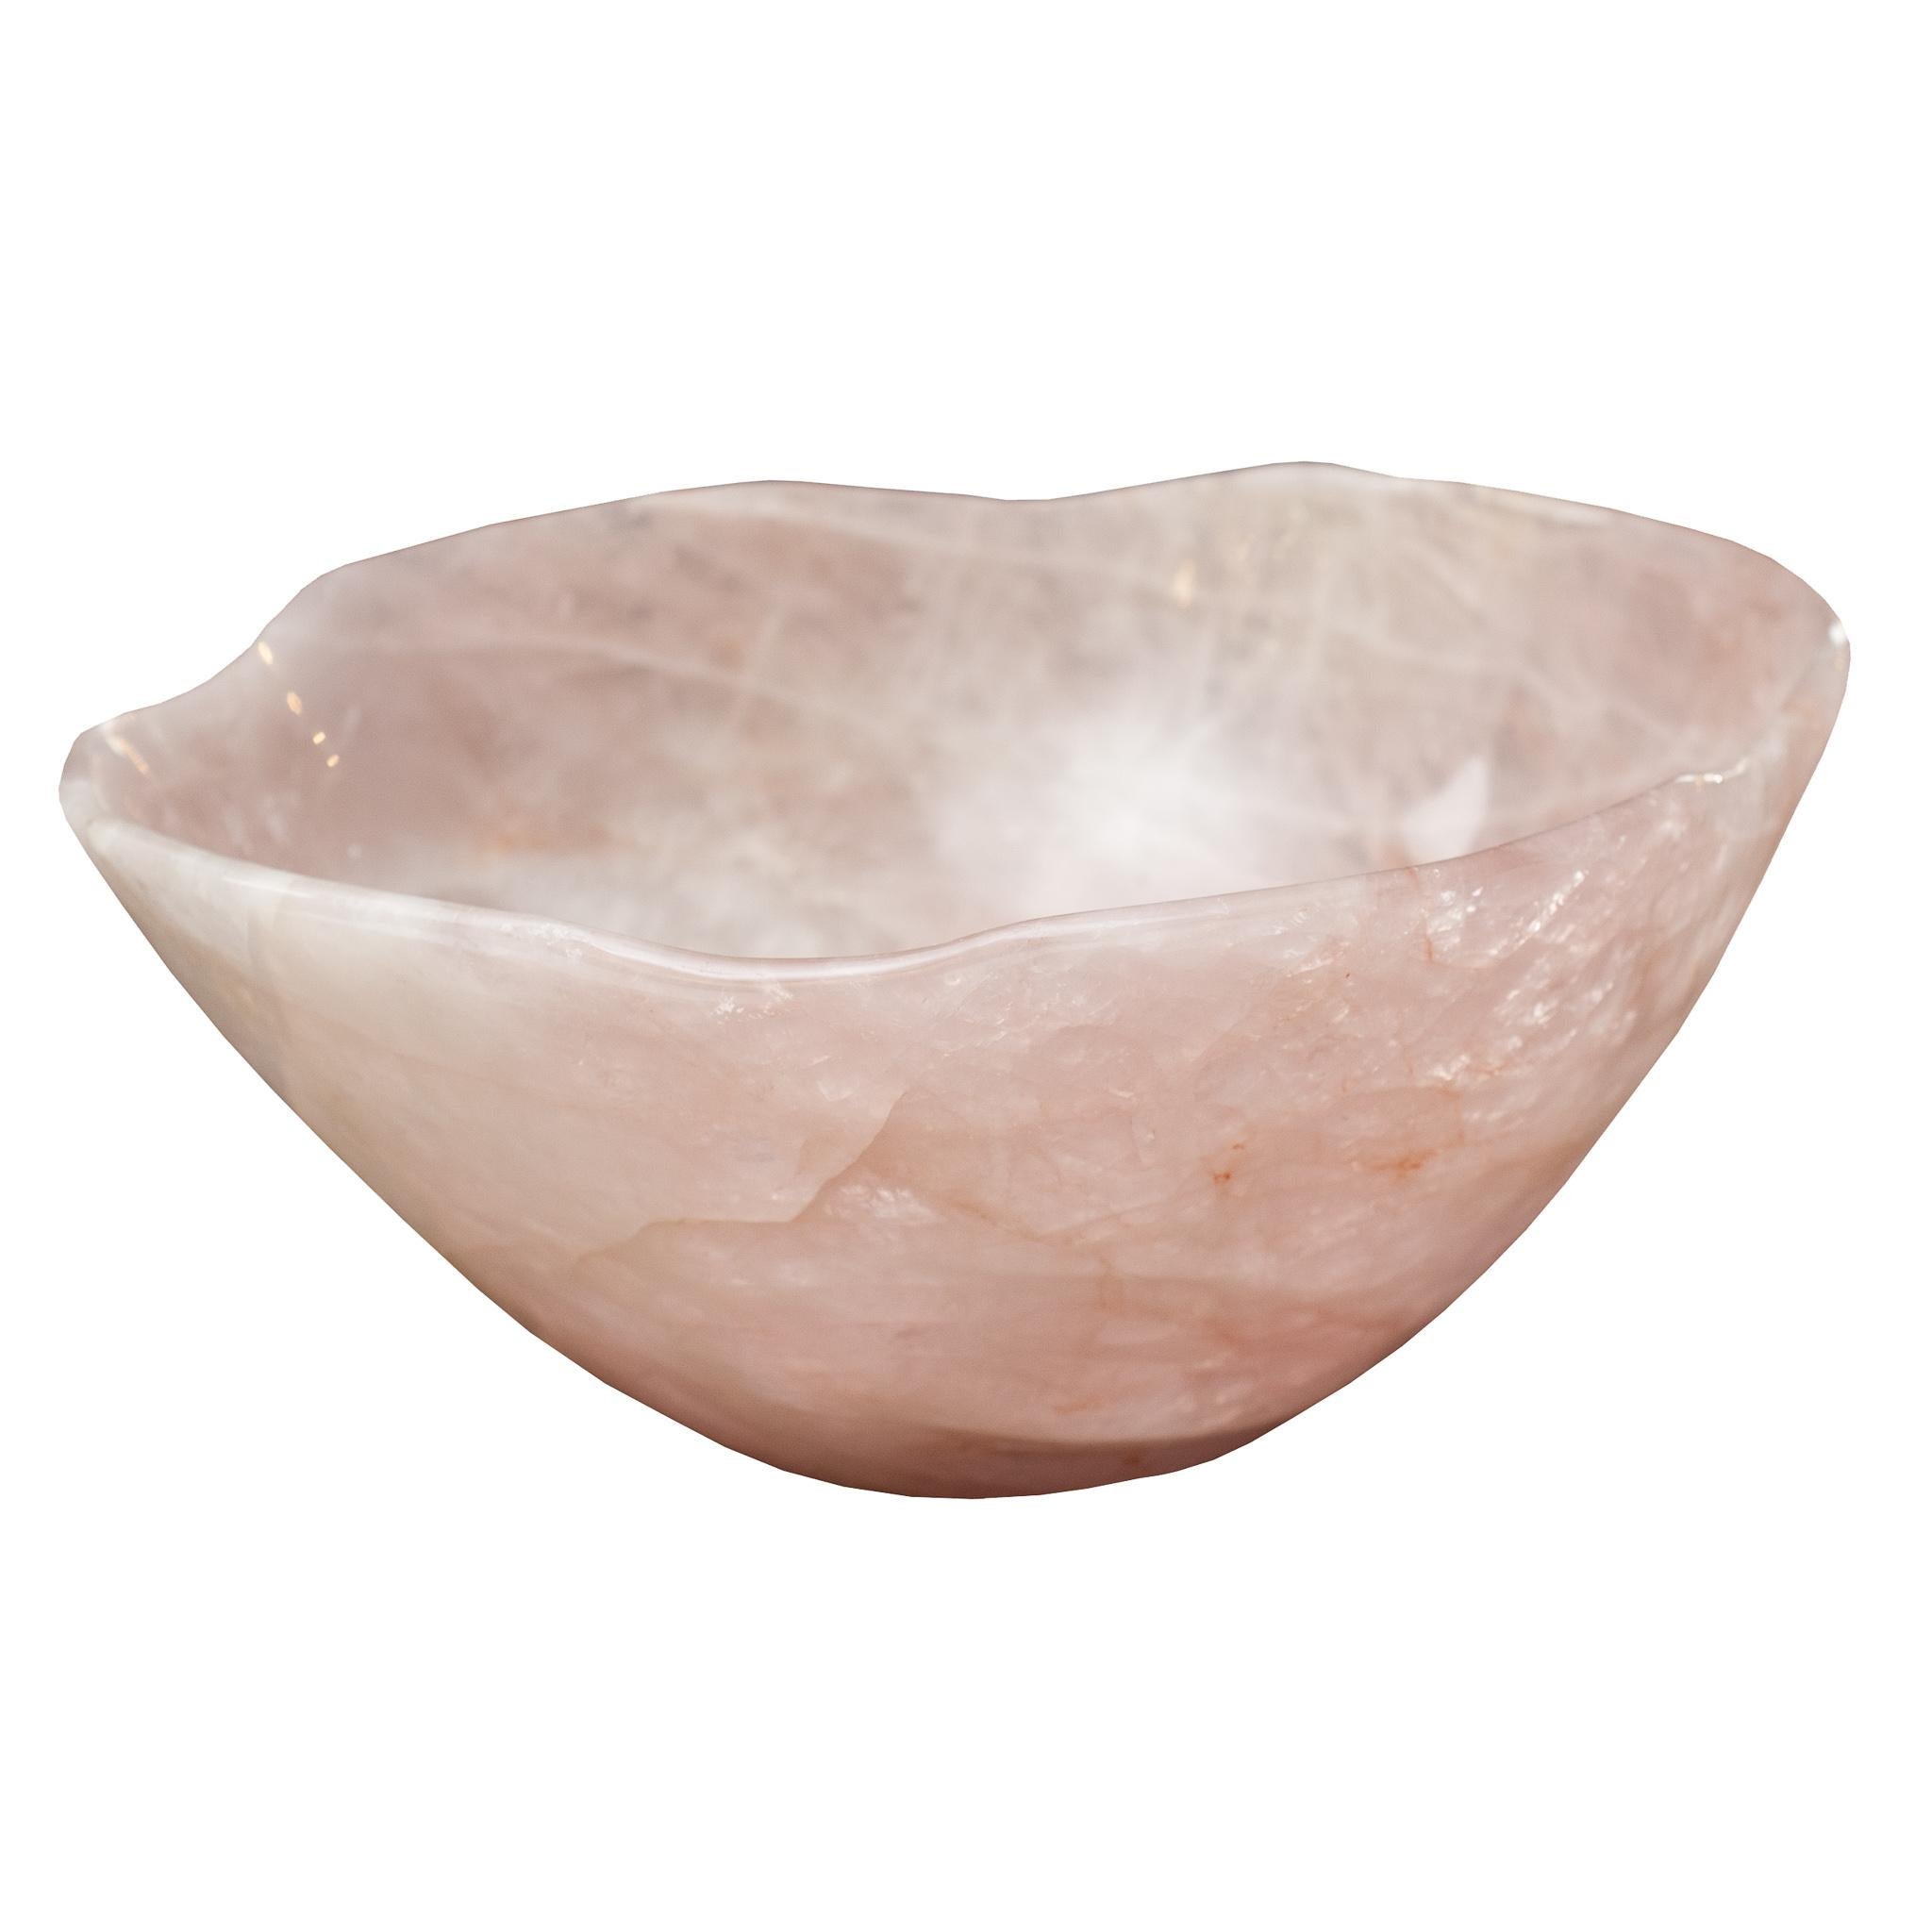 How do I choose a quartz crystal bowl?